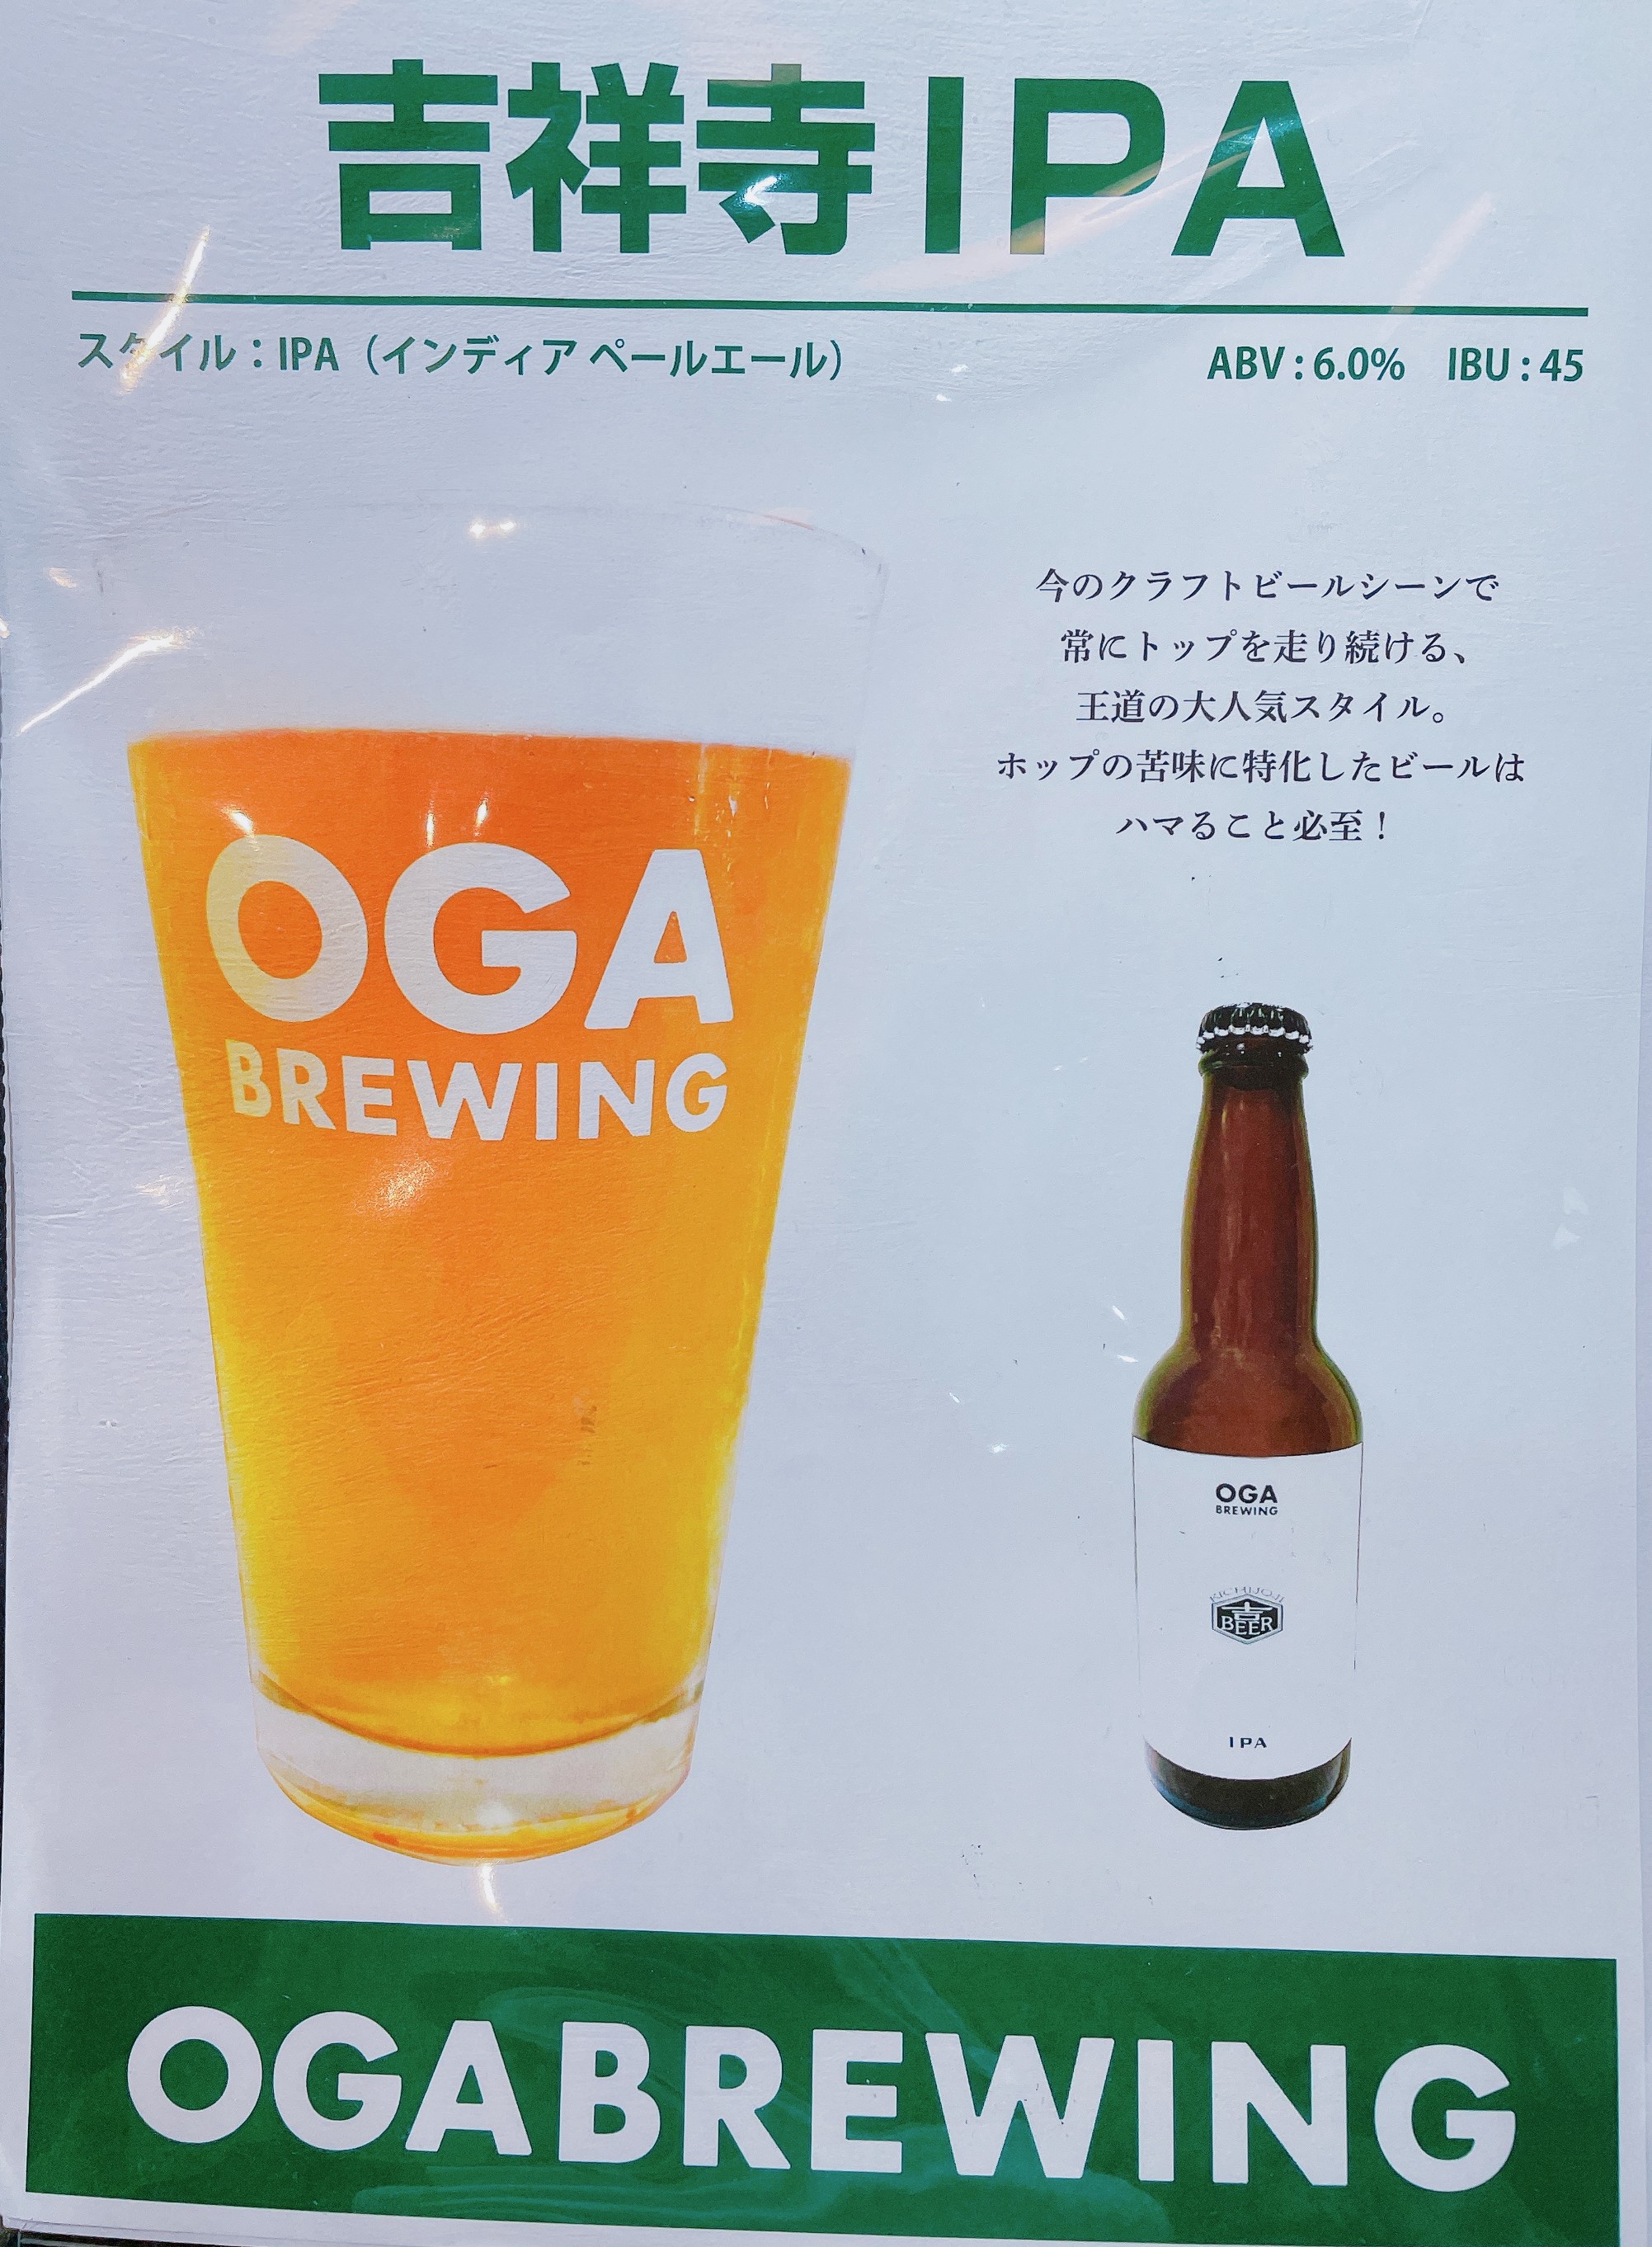 クラフトビール「吉祥寺IPA」